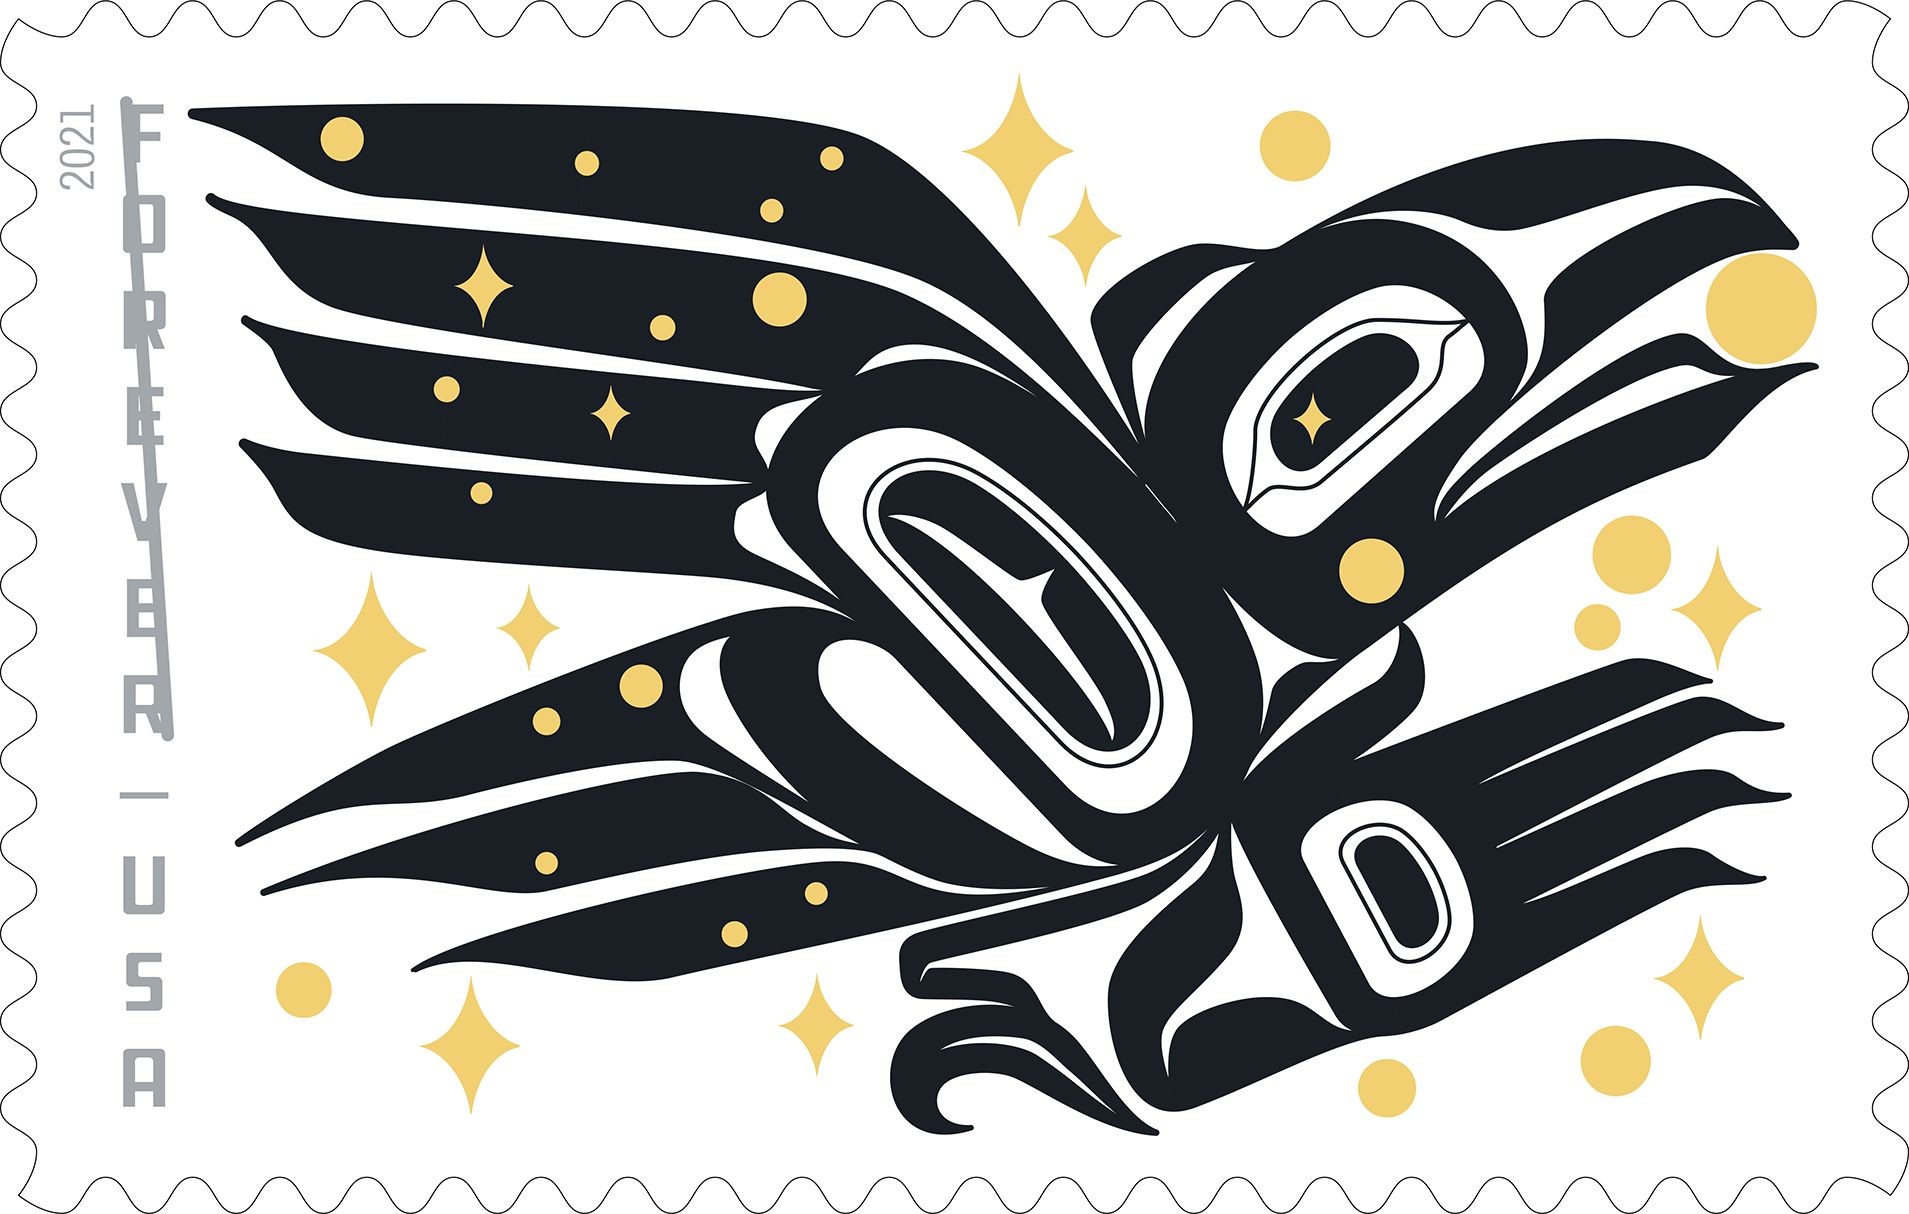 2021 U.S. Stamp Program